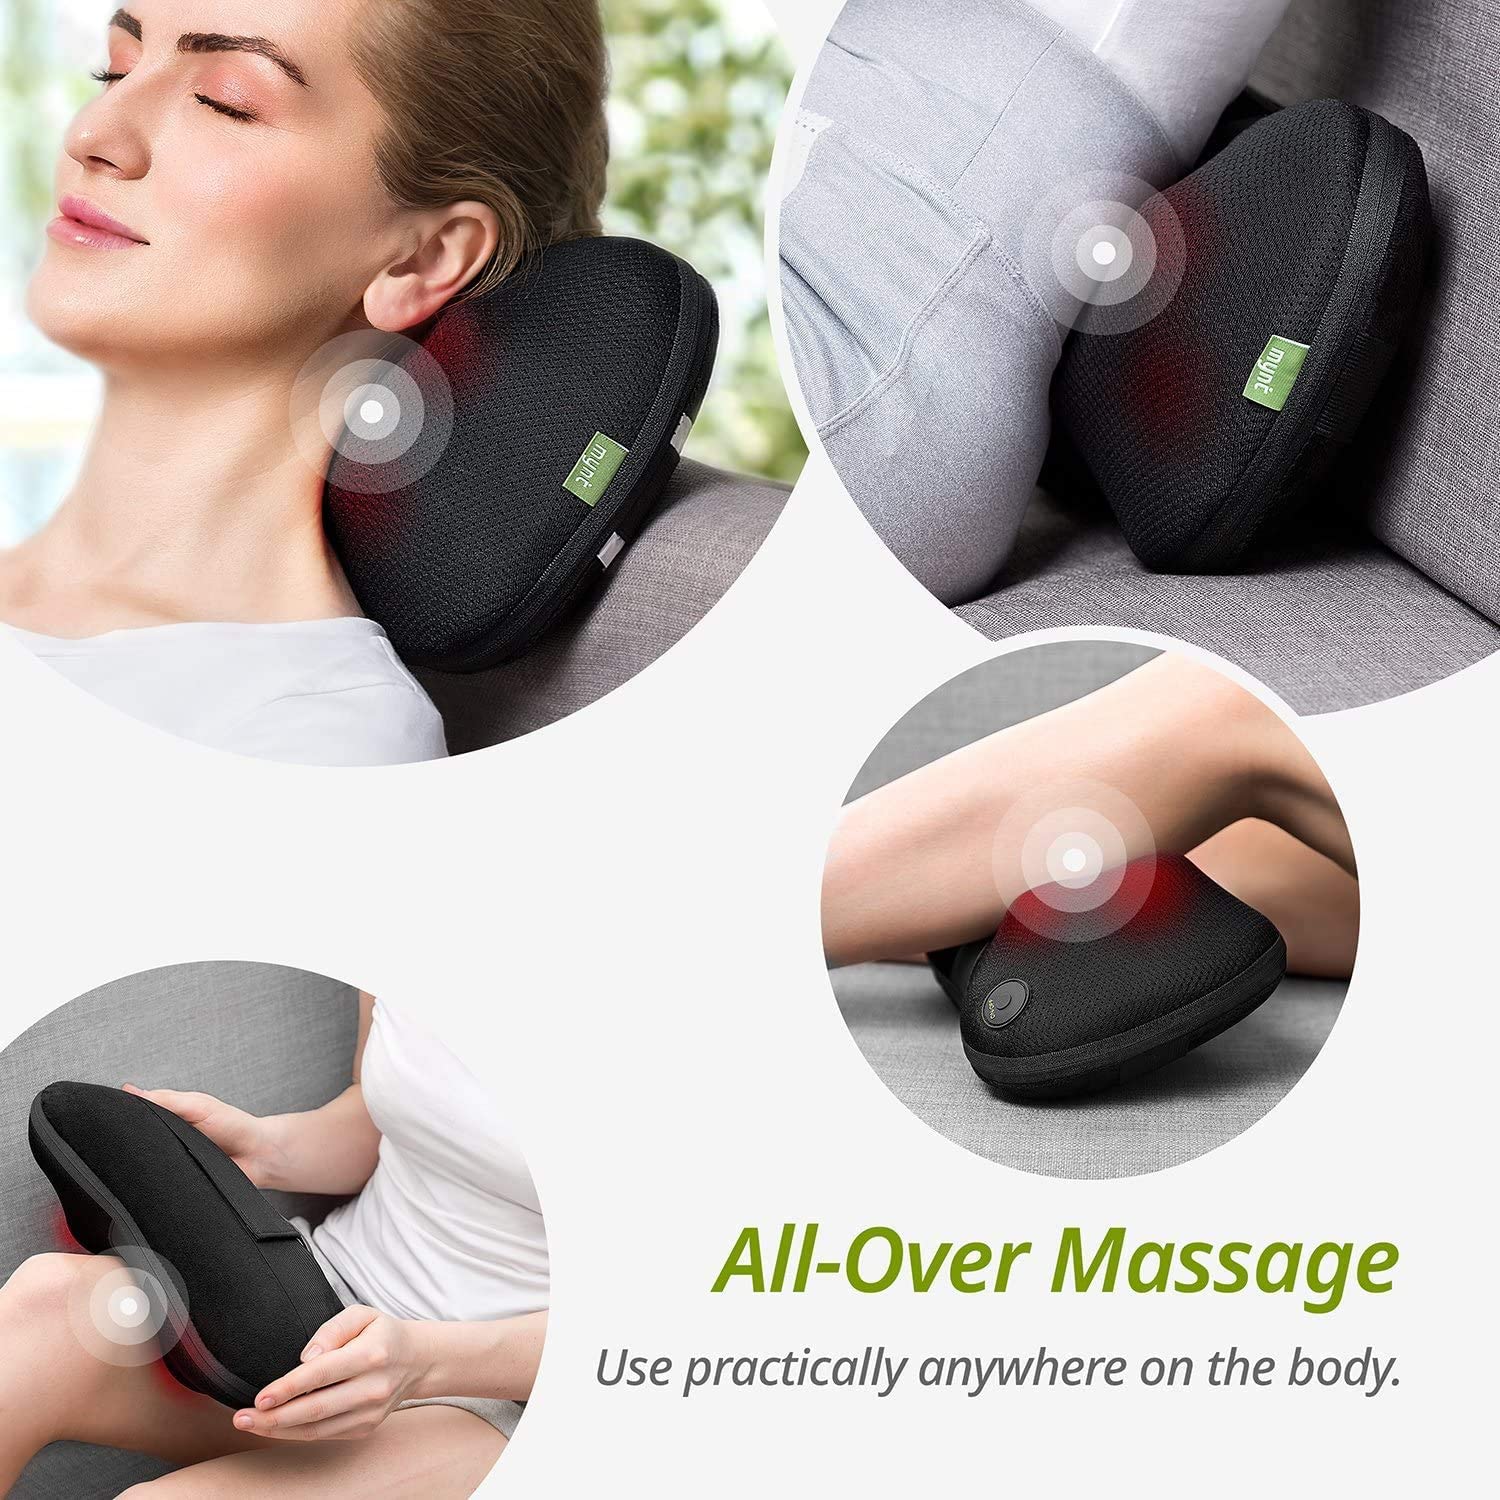 Mynt Shiatsu Heat Massage Pillow with 4 Massage Balls